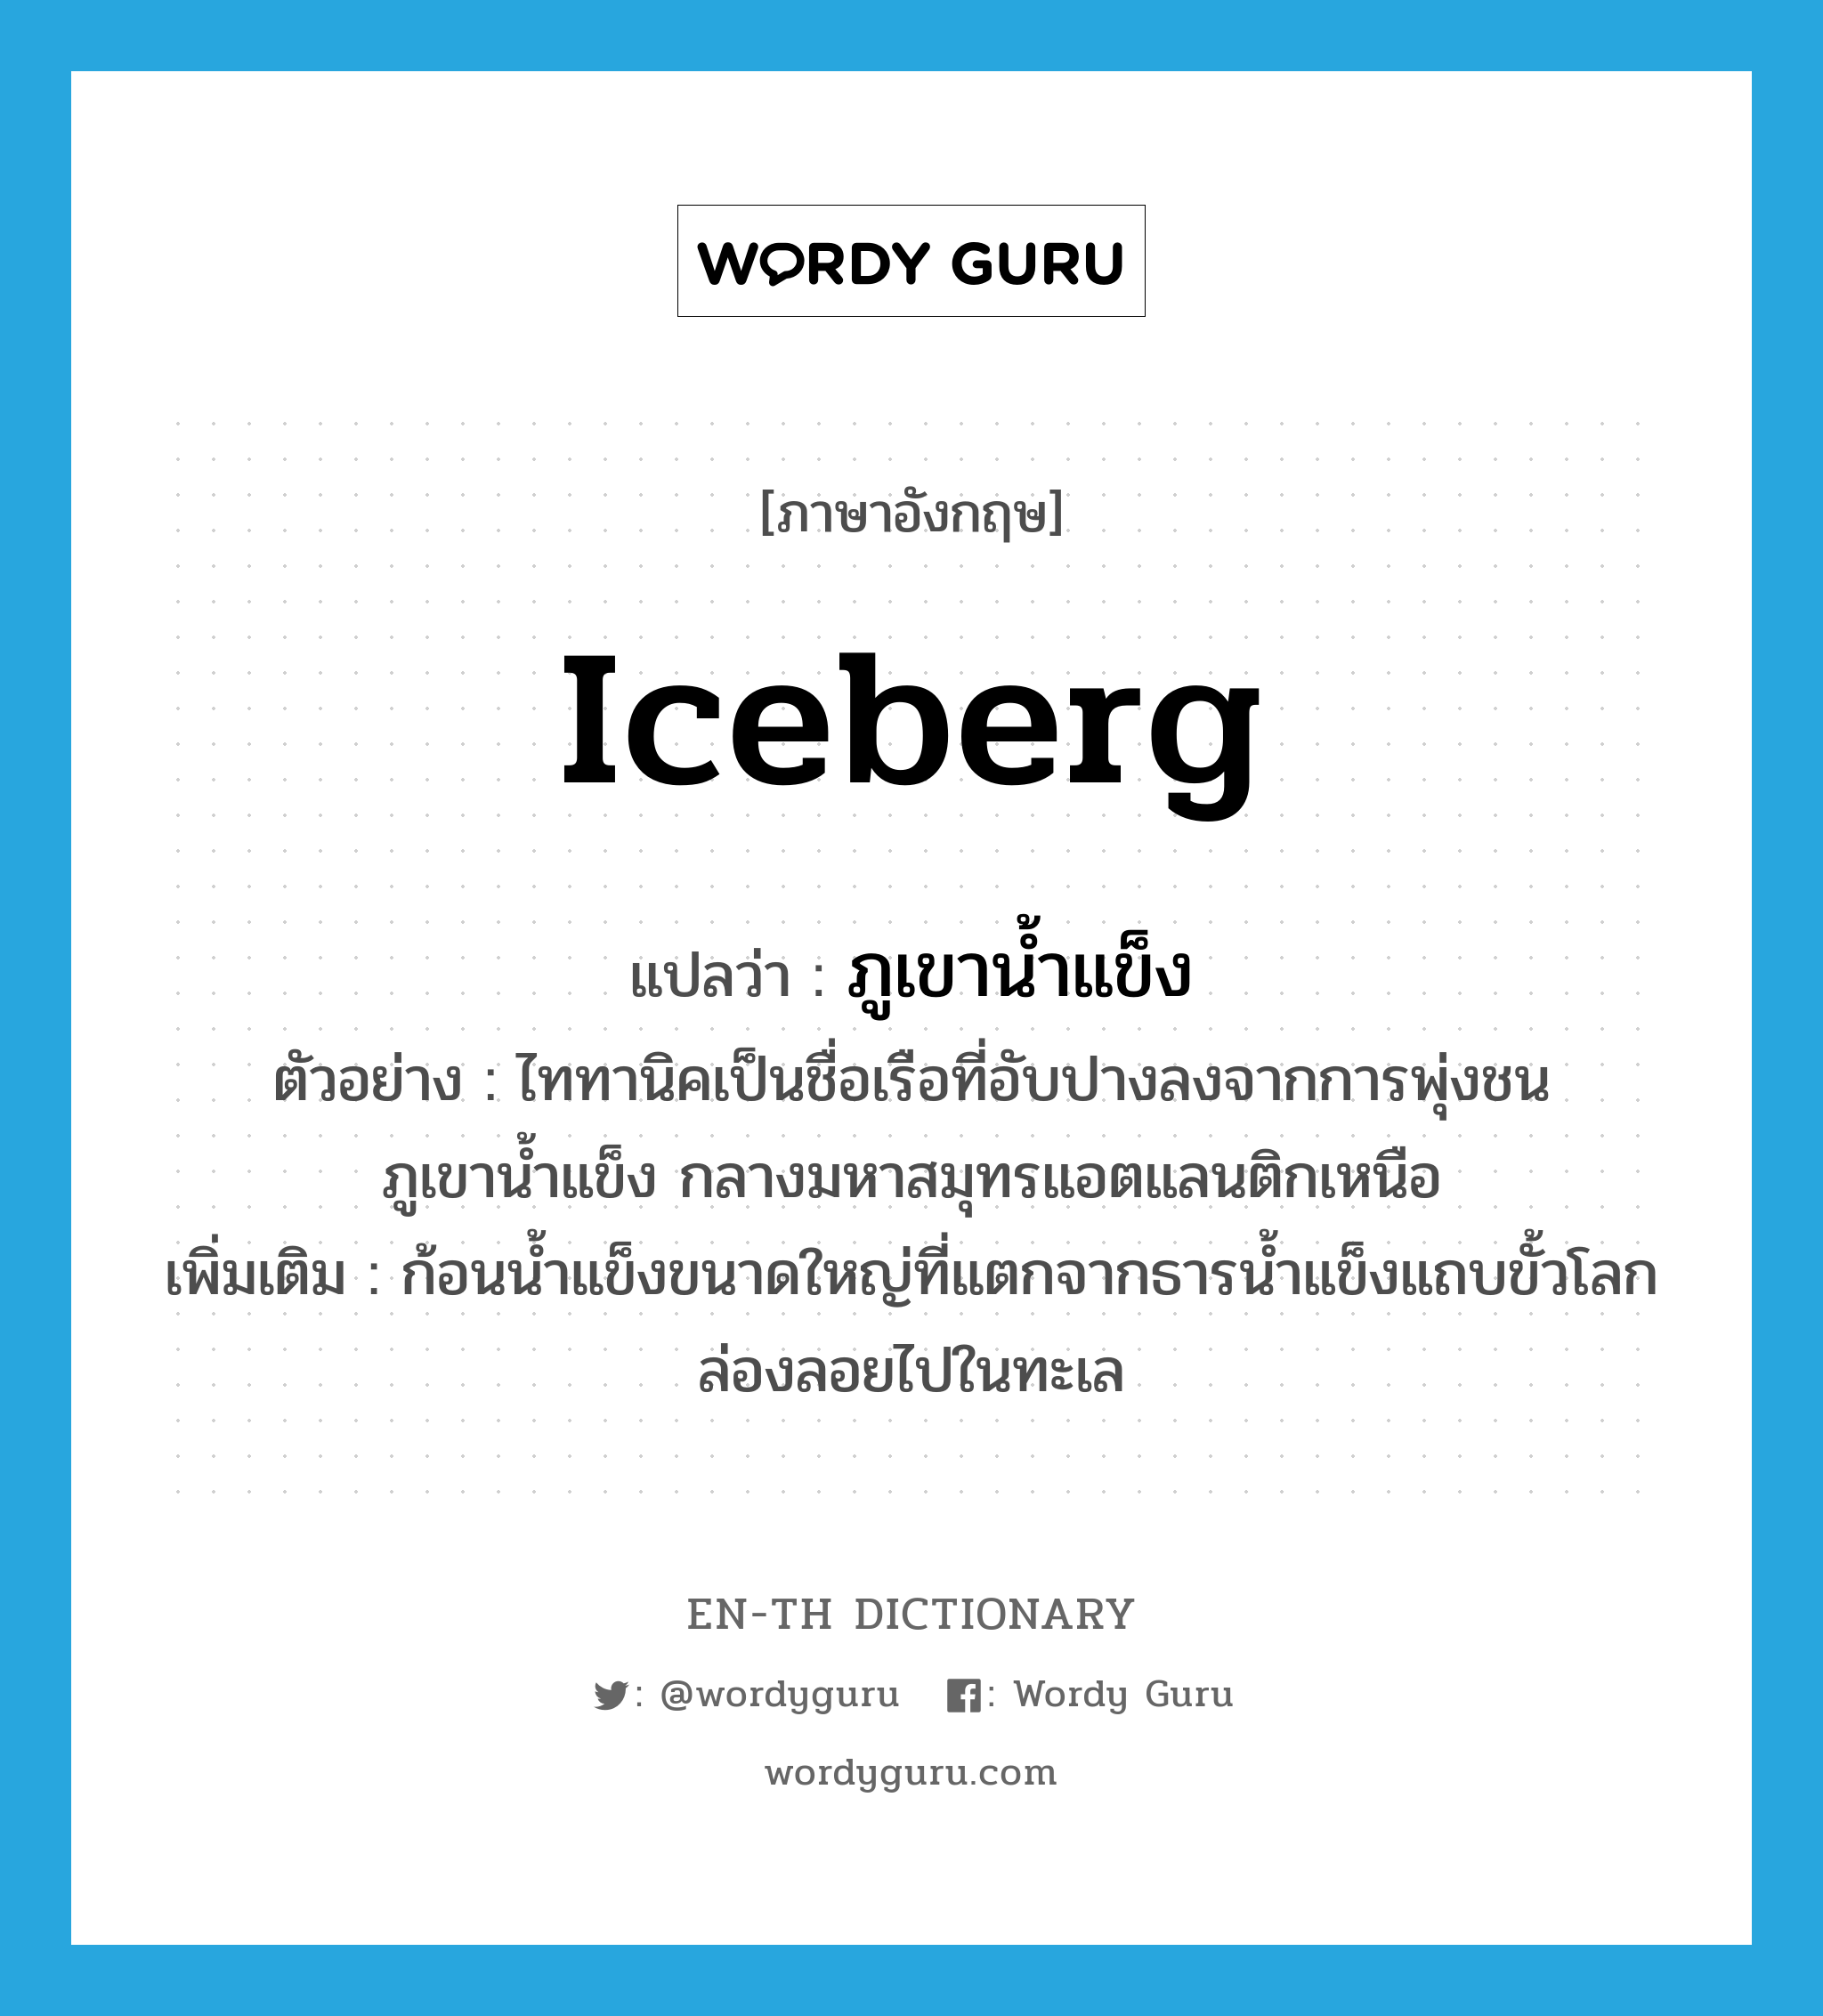 ภูเขาน้ำแข็ง ภาษาอังกฤษ?, คำศัพท์ภาษาอังกฤษ ภูเขาน้ำแข็ง แปลว่า iceberg ประเภท N ตัวอย่าง ไททานิคเป็นชื่อเรือที่อับปางลงจากการพุ่งชนภูเขาน้ำแข็ง กลางมหาสมุทรแอตแลนติกเหนือ เพิ่มเติม ก้อนน้ำแข็งขนาดใหญ่ที่แตกจากธารน้ำแข็งแถบขั้วโลกล่องลอยไปในทะเล หมวด N